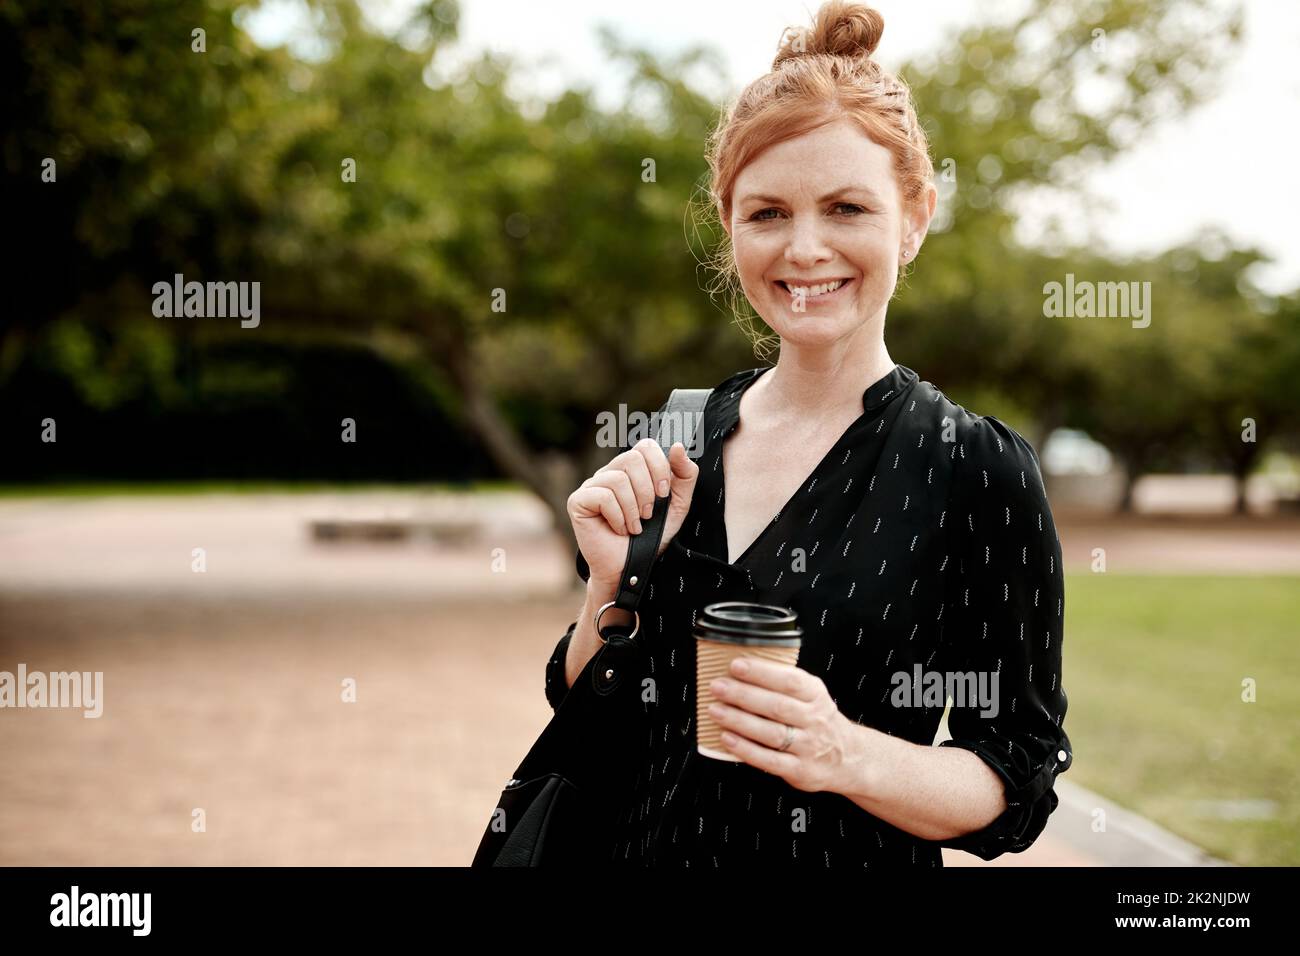 Una pausa caffè dà un impulso alla giornata. Ritratto di una donna d'affari sicura che si gode una pausa caffè in città. Foto Stock